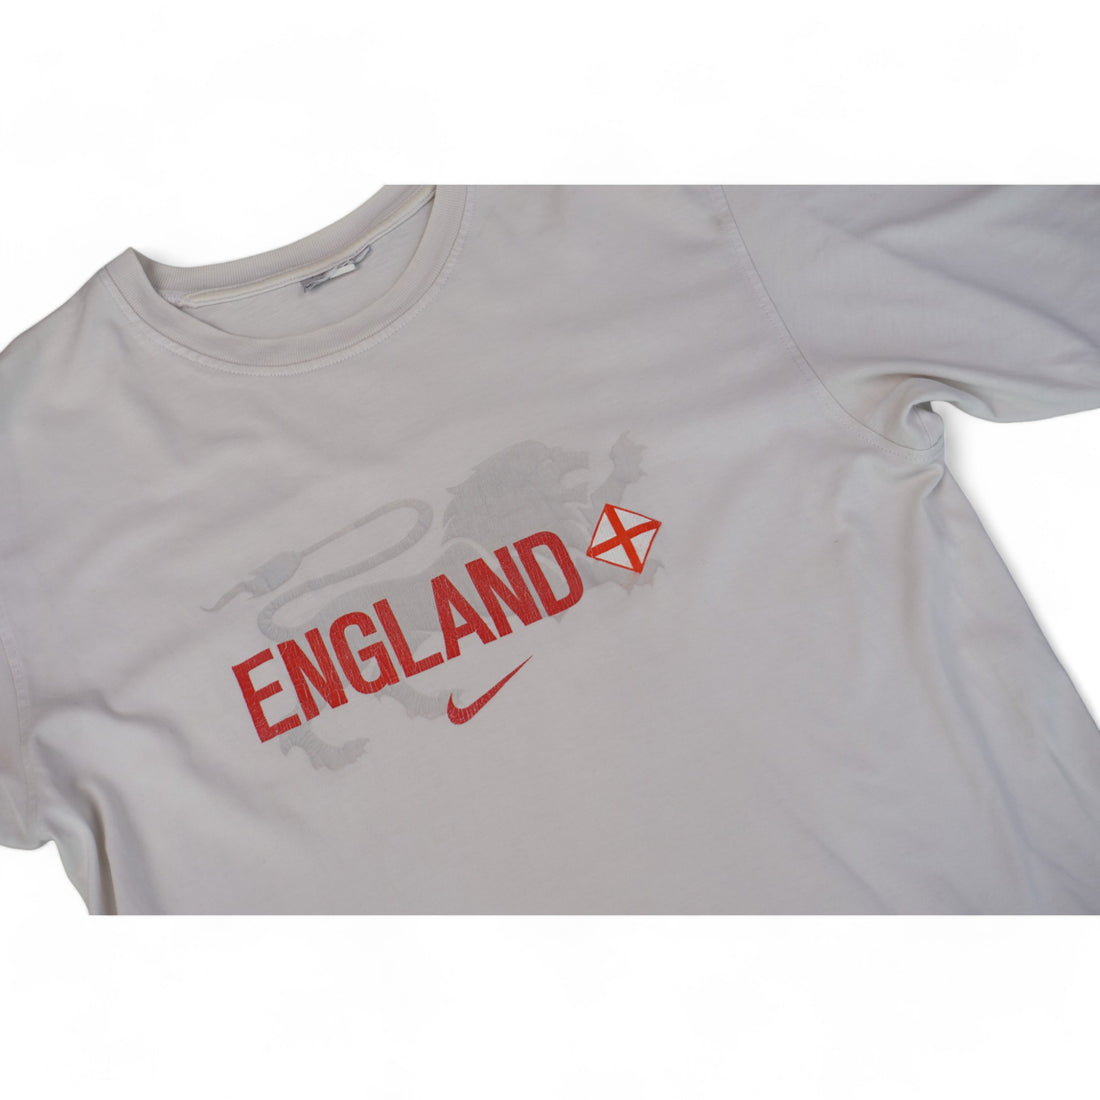 Nike Vintage England Tshirt (L)